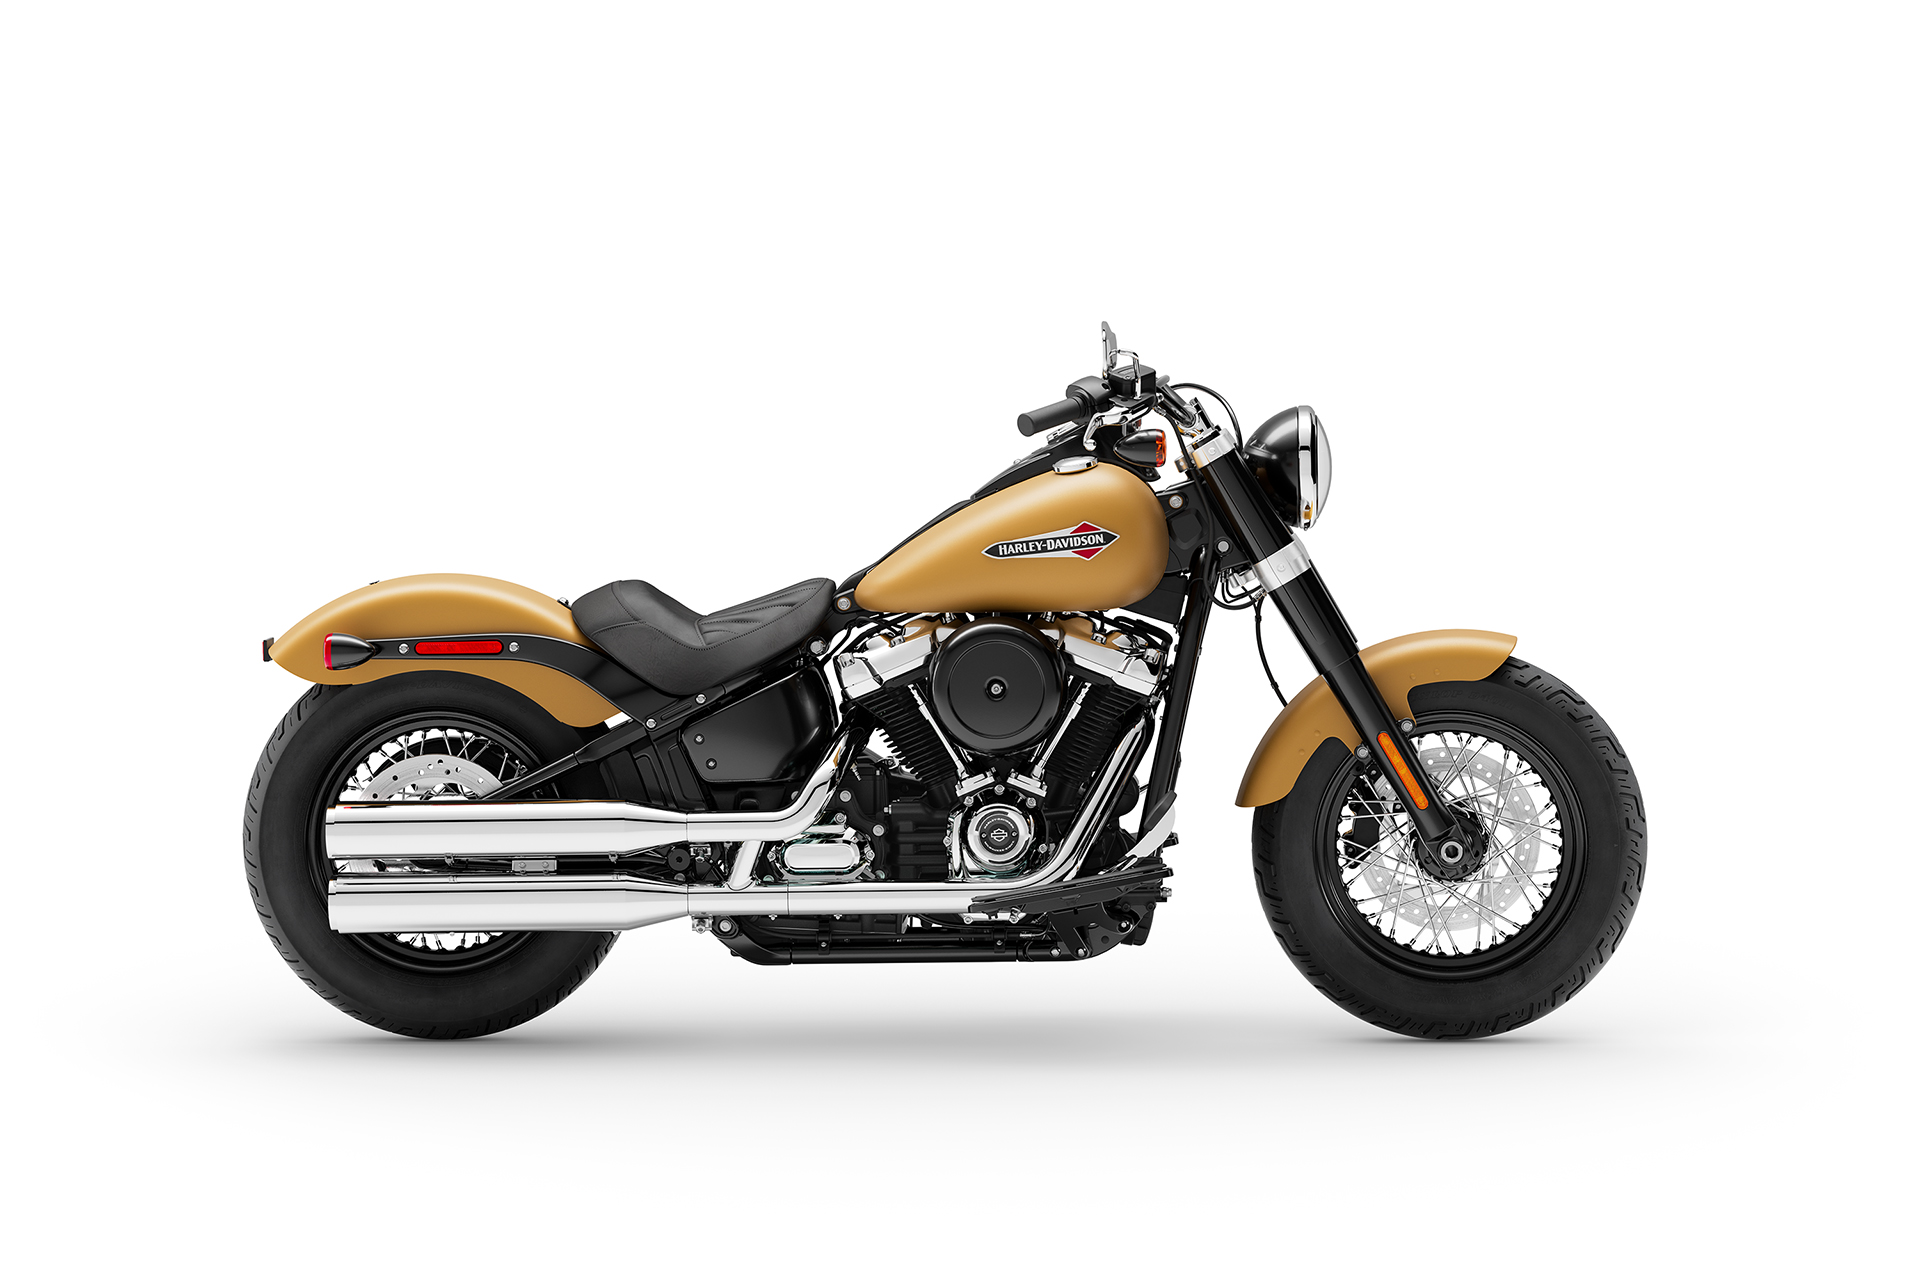 Harley Davidson Softail Slim 2019 Flsl Photos Data At Thunderbike